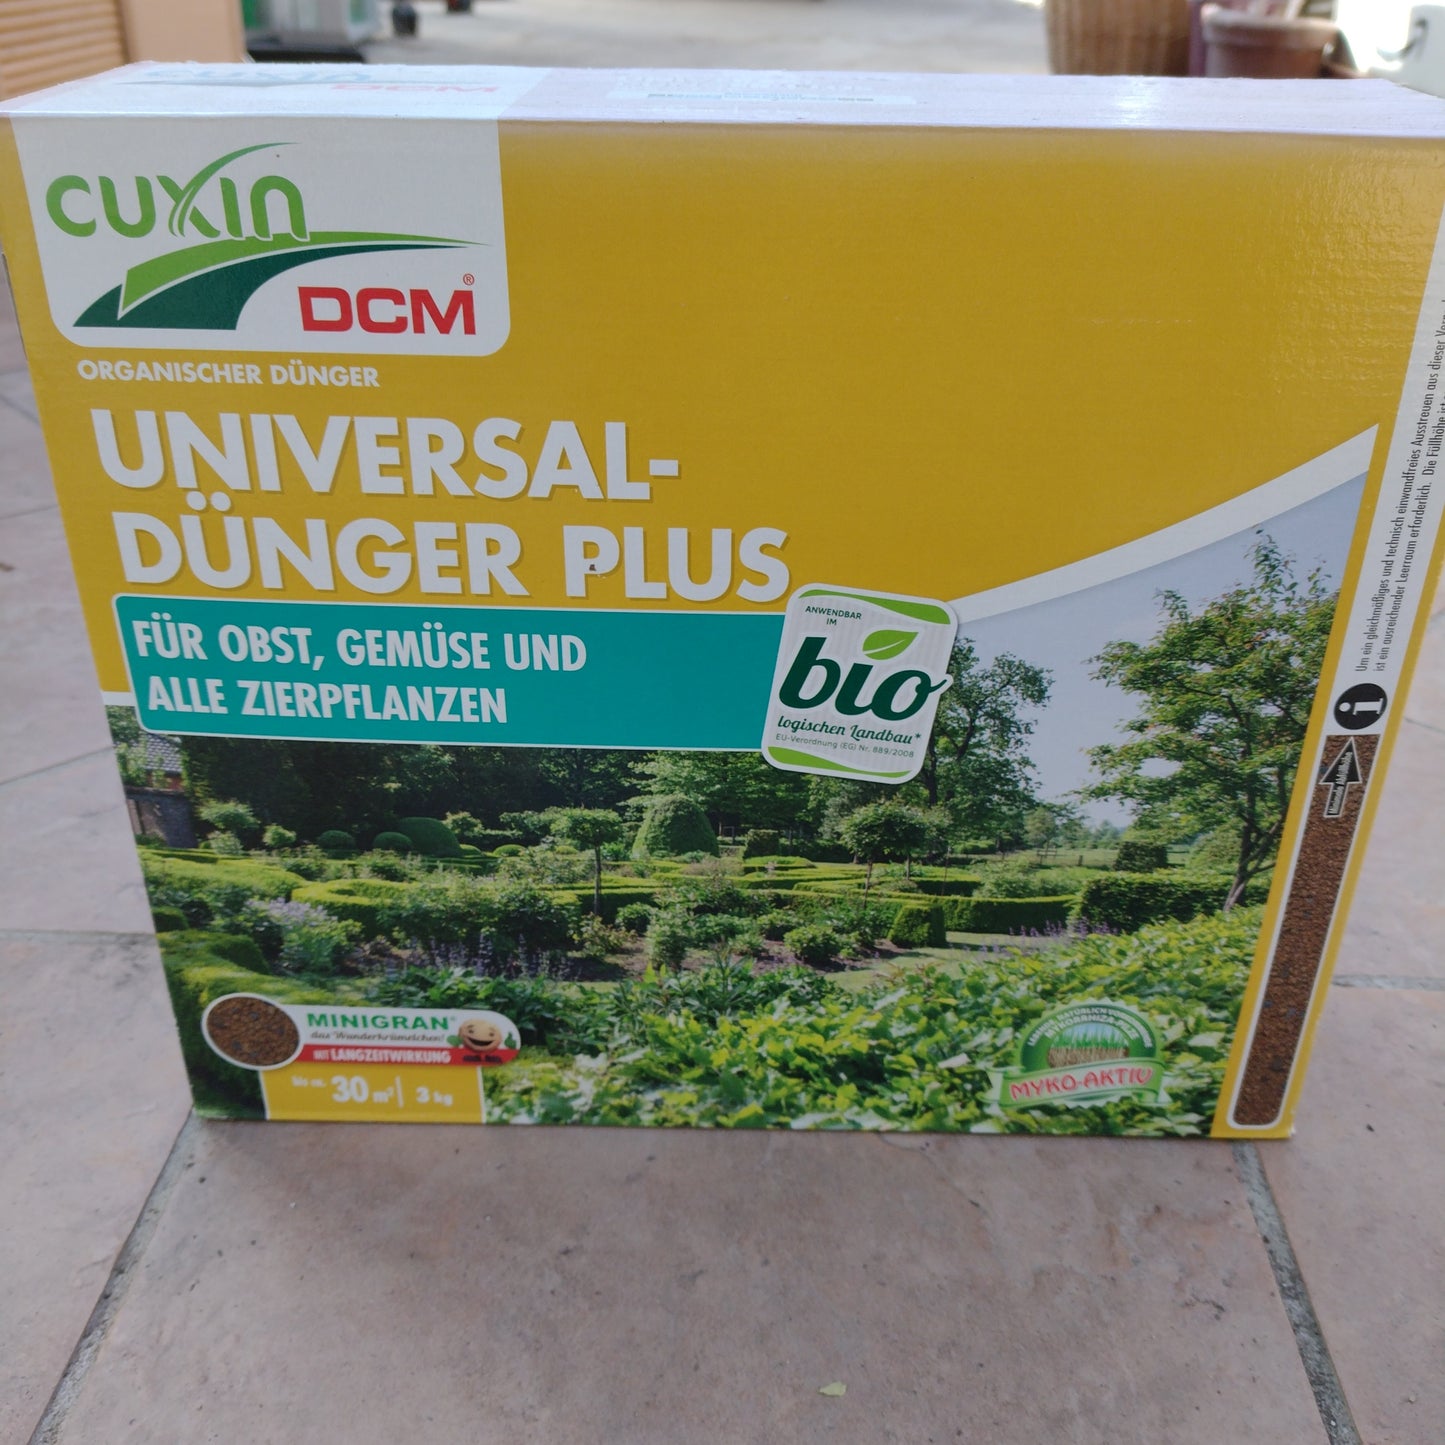 Universal-Dünger Plus 3 kg Cuxin DCM